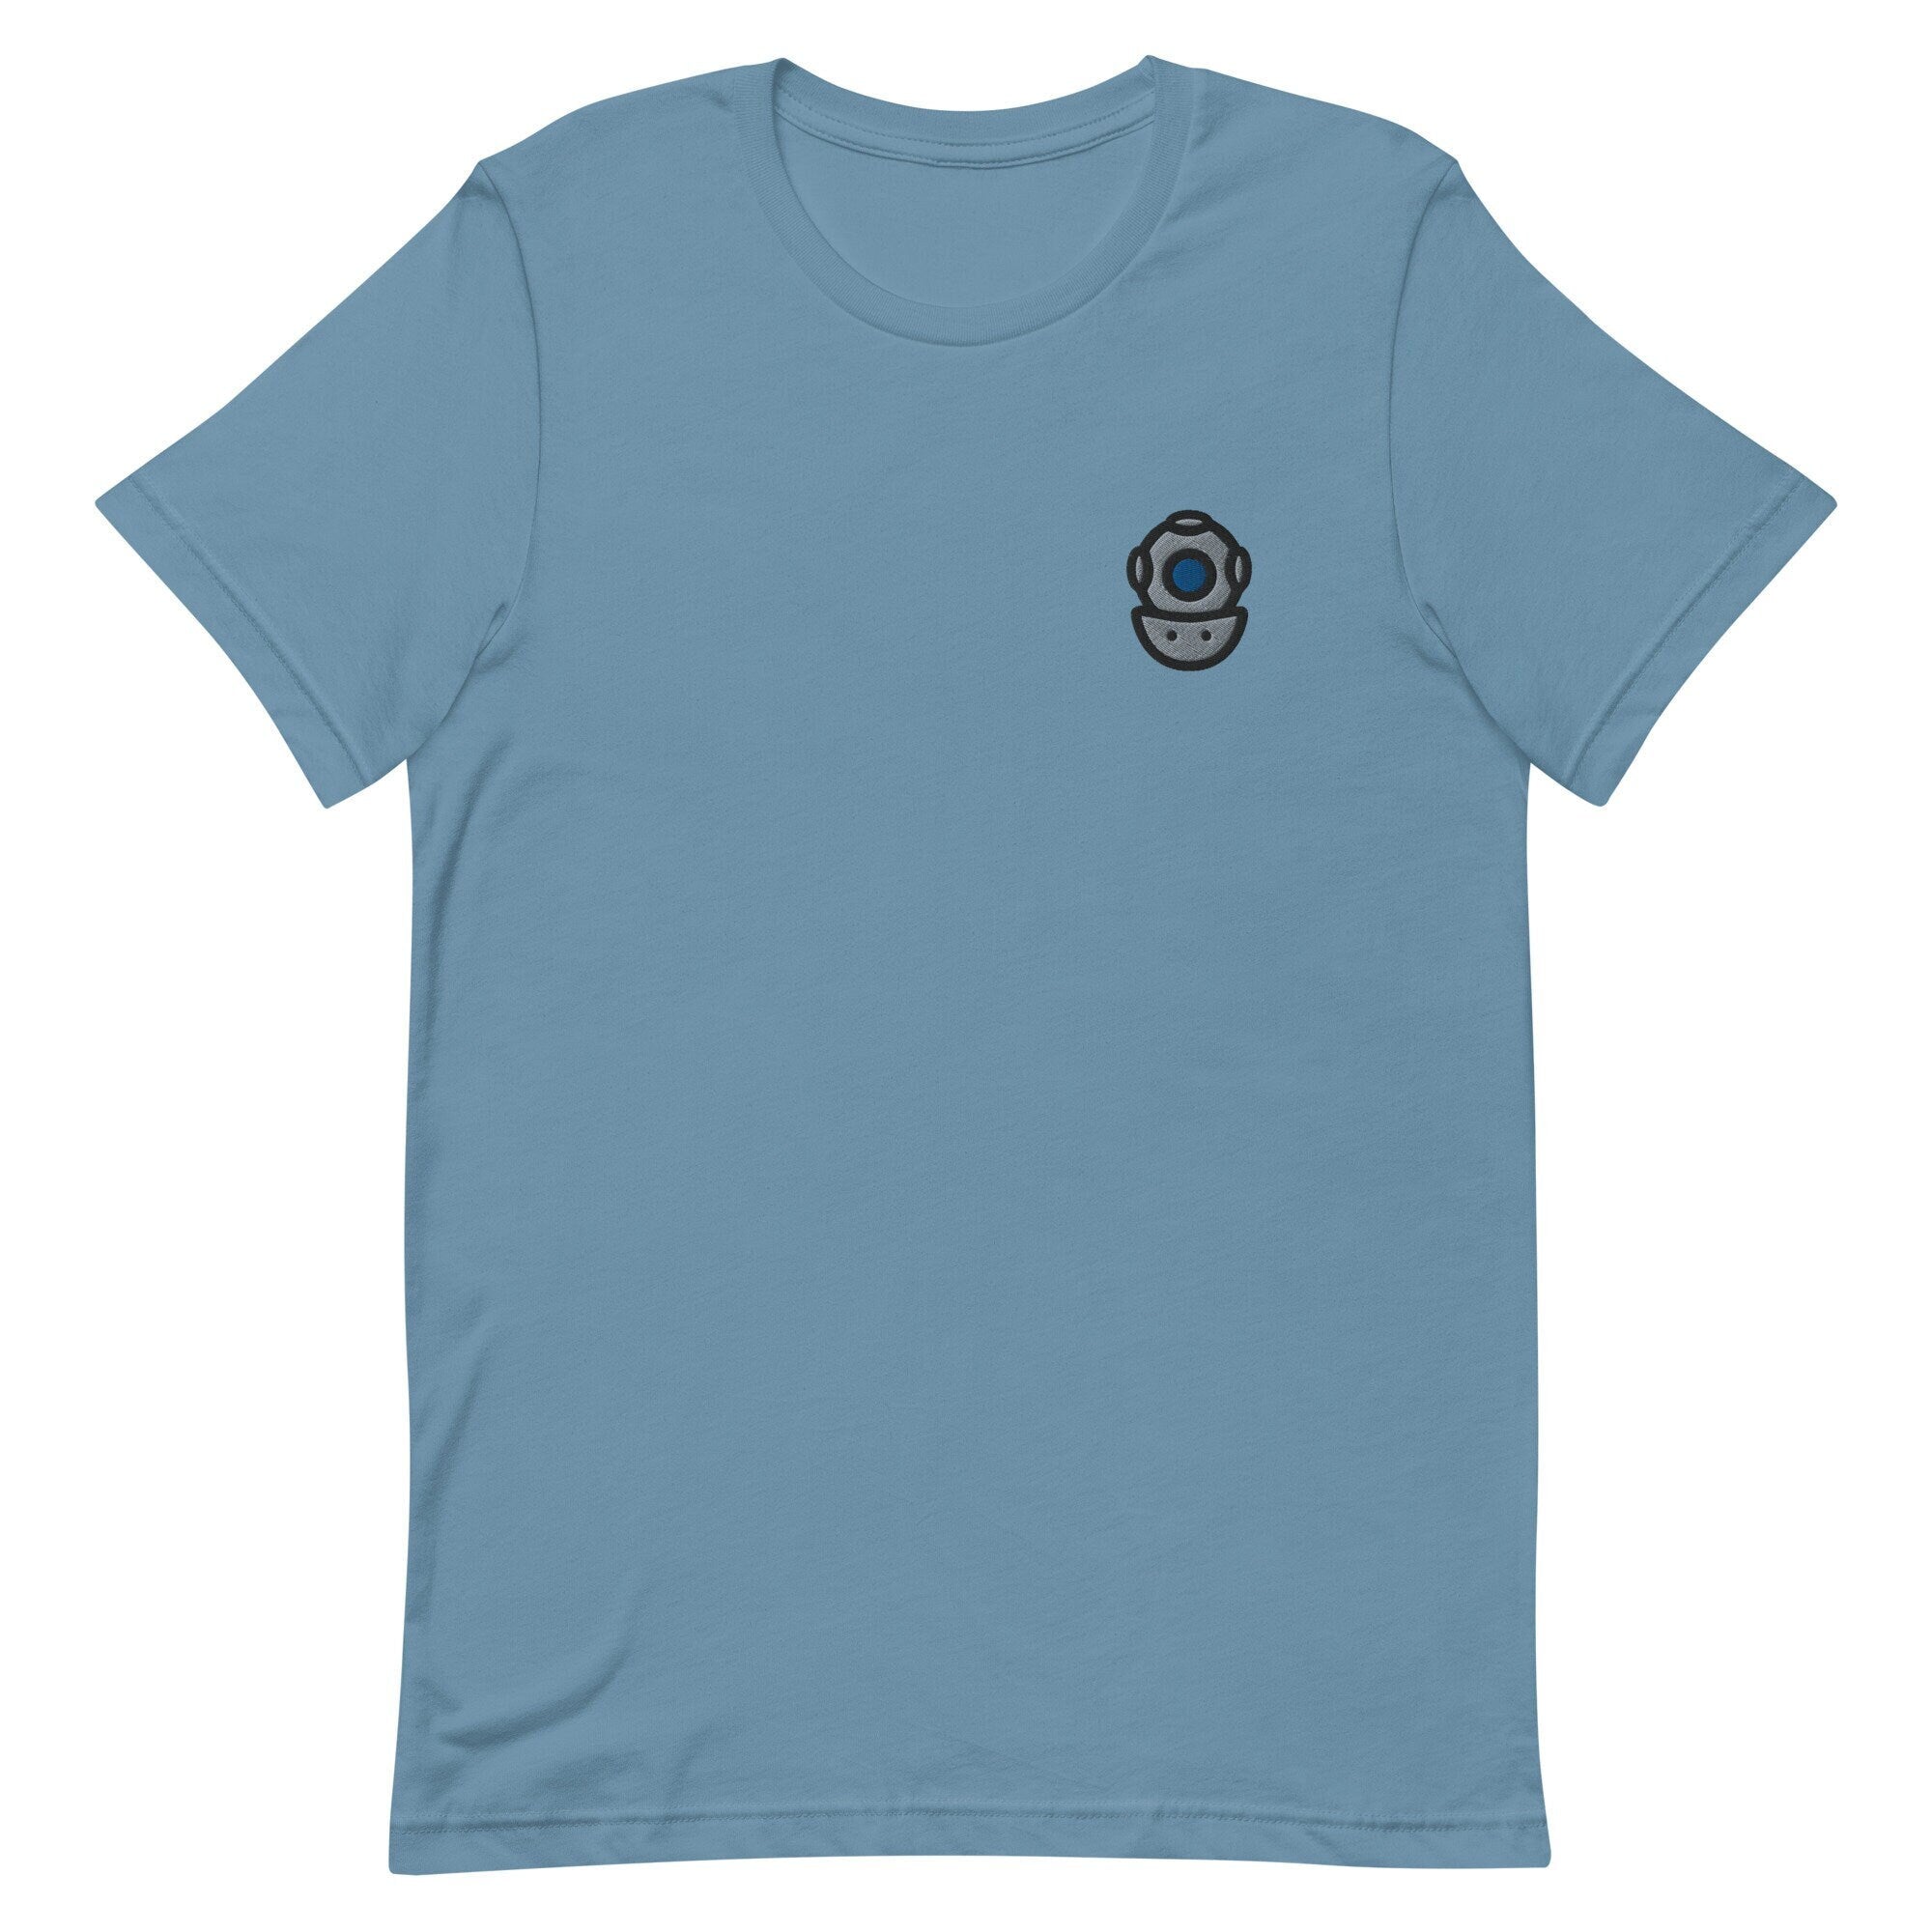 Scuba Helmet Premium Men's T-Shirt, Embroidered Men's T-Shirt Gift for Boyfriend, Men's Short Sleeve Shirt - Multiple Colors